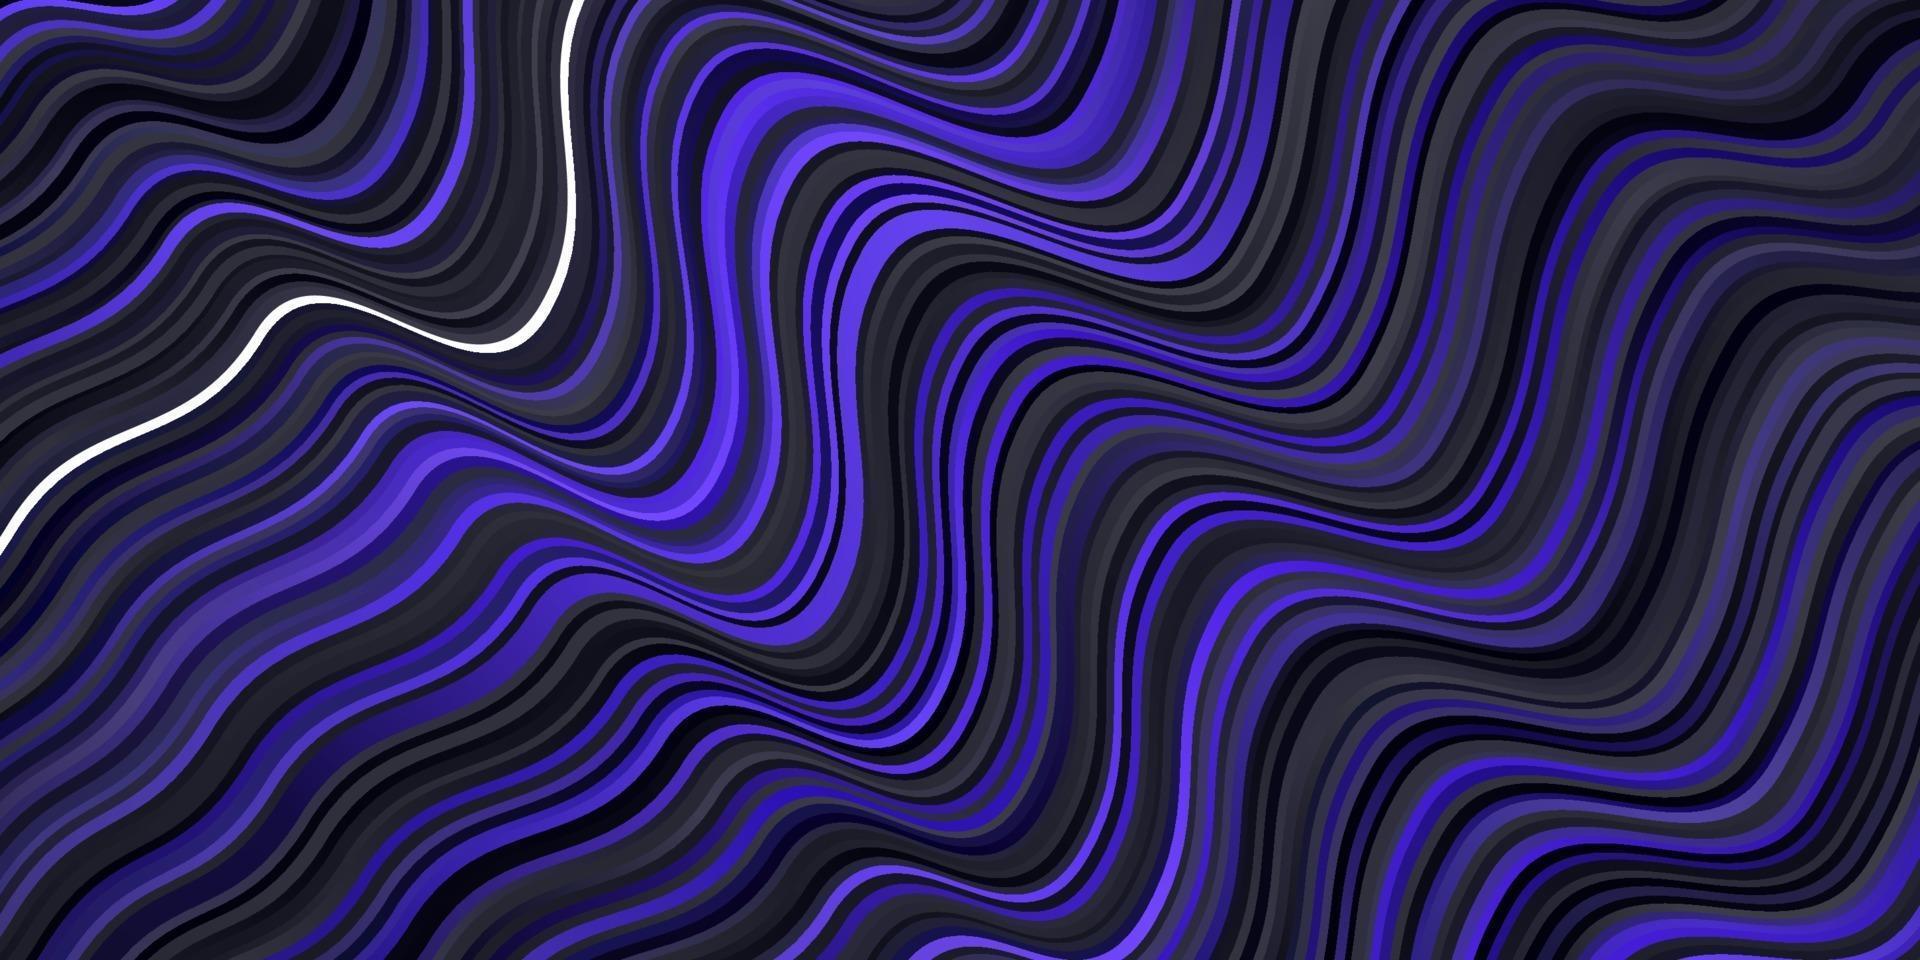 sfondo vettoriale viola scuro con linee curve.